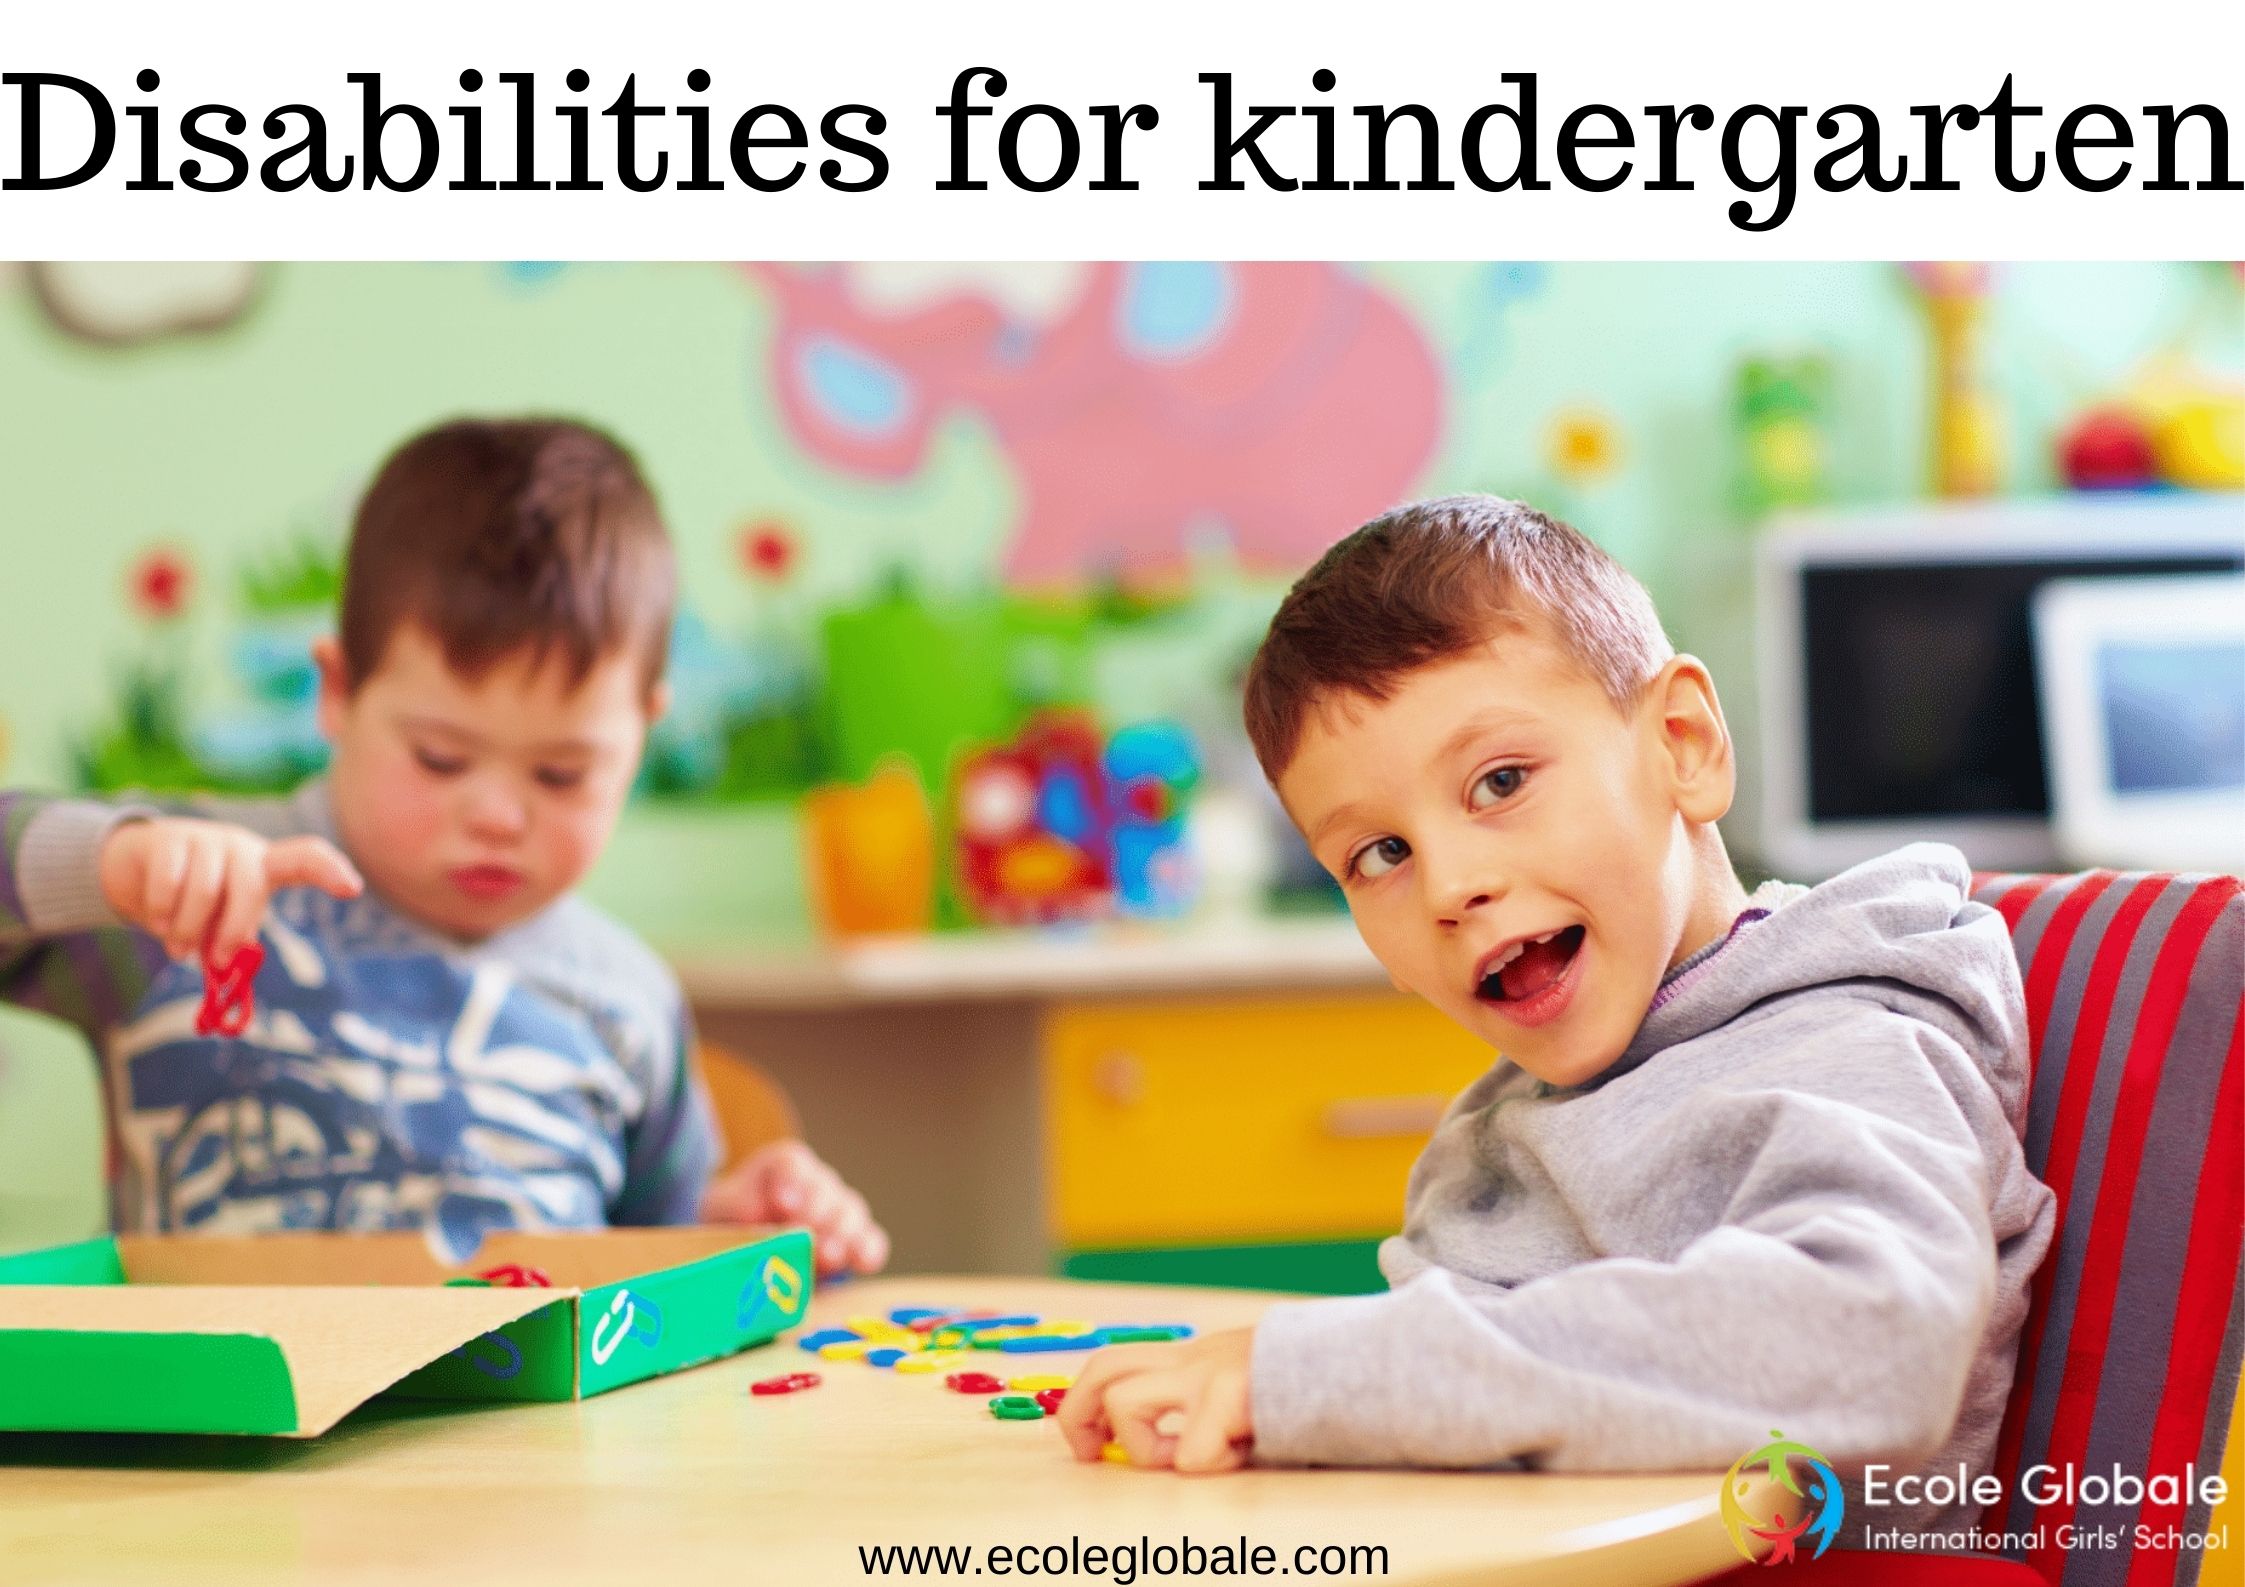 Disabilities for kindergarten